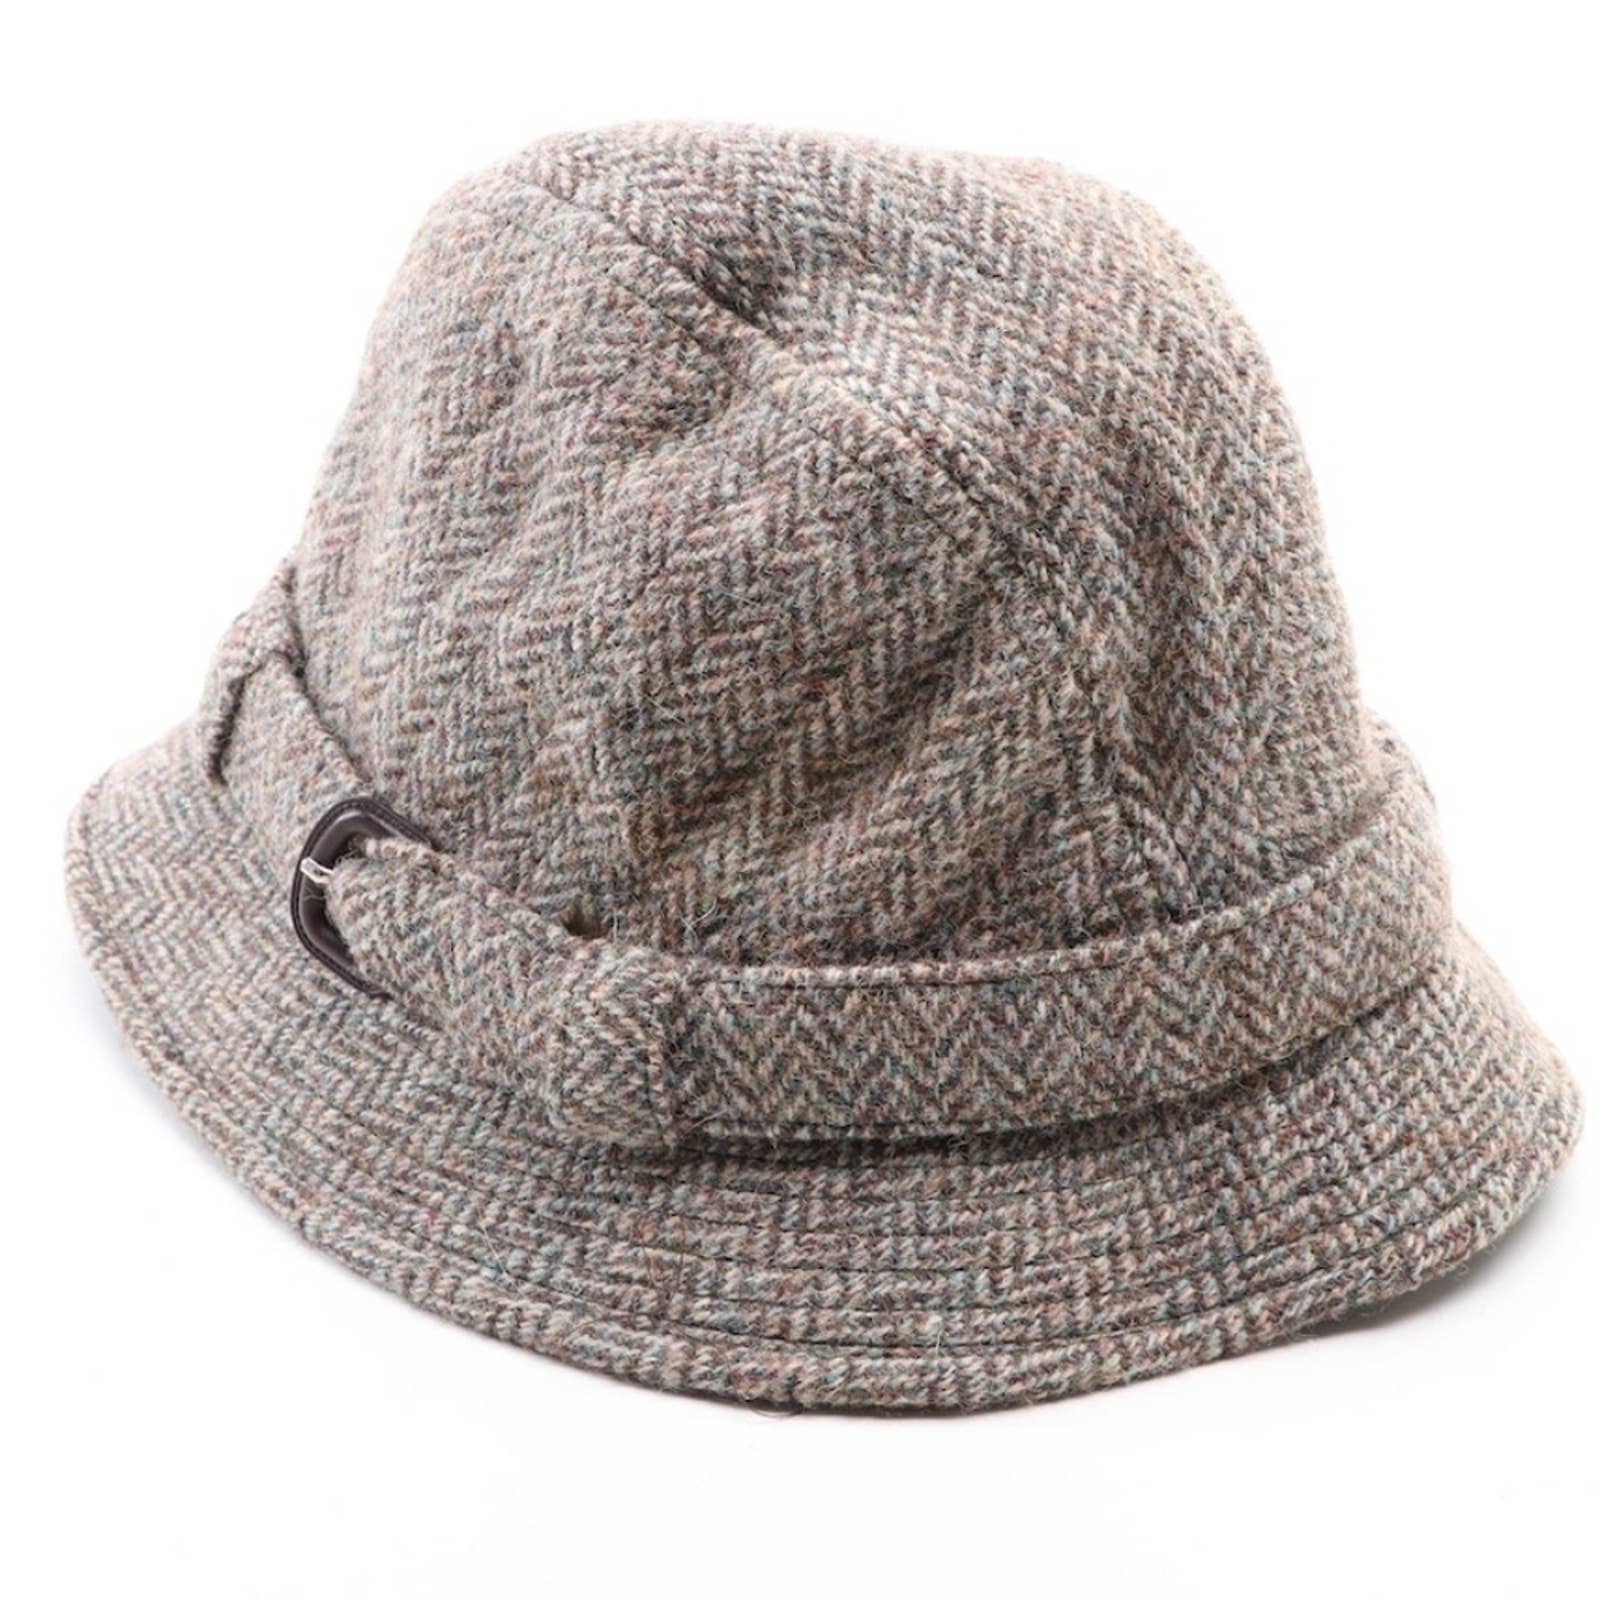 Pre-loved Braemar Harris Tweed High Quality Wool Bucket Hat - Made